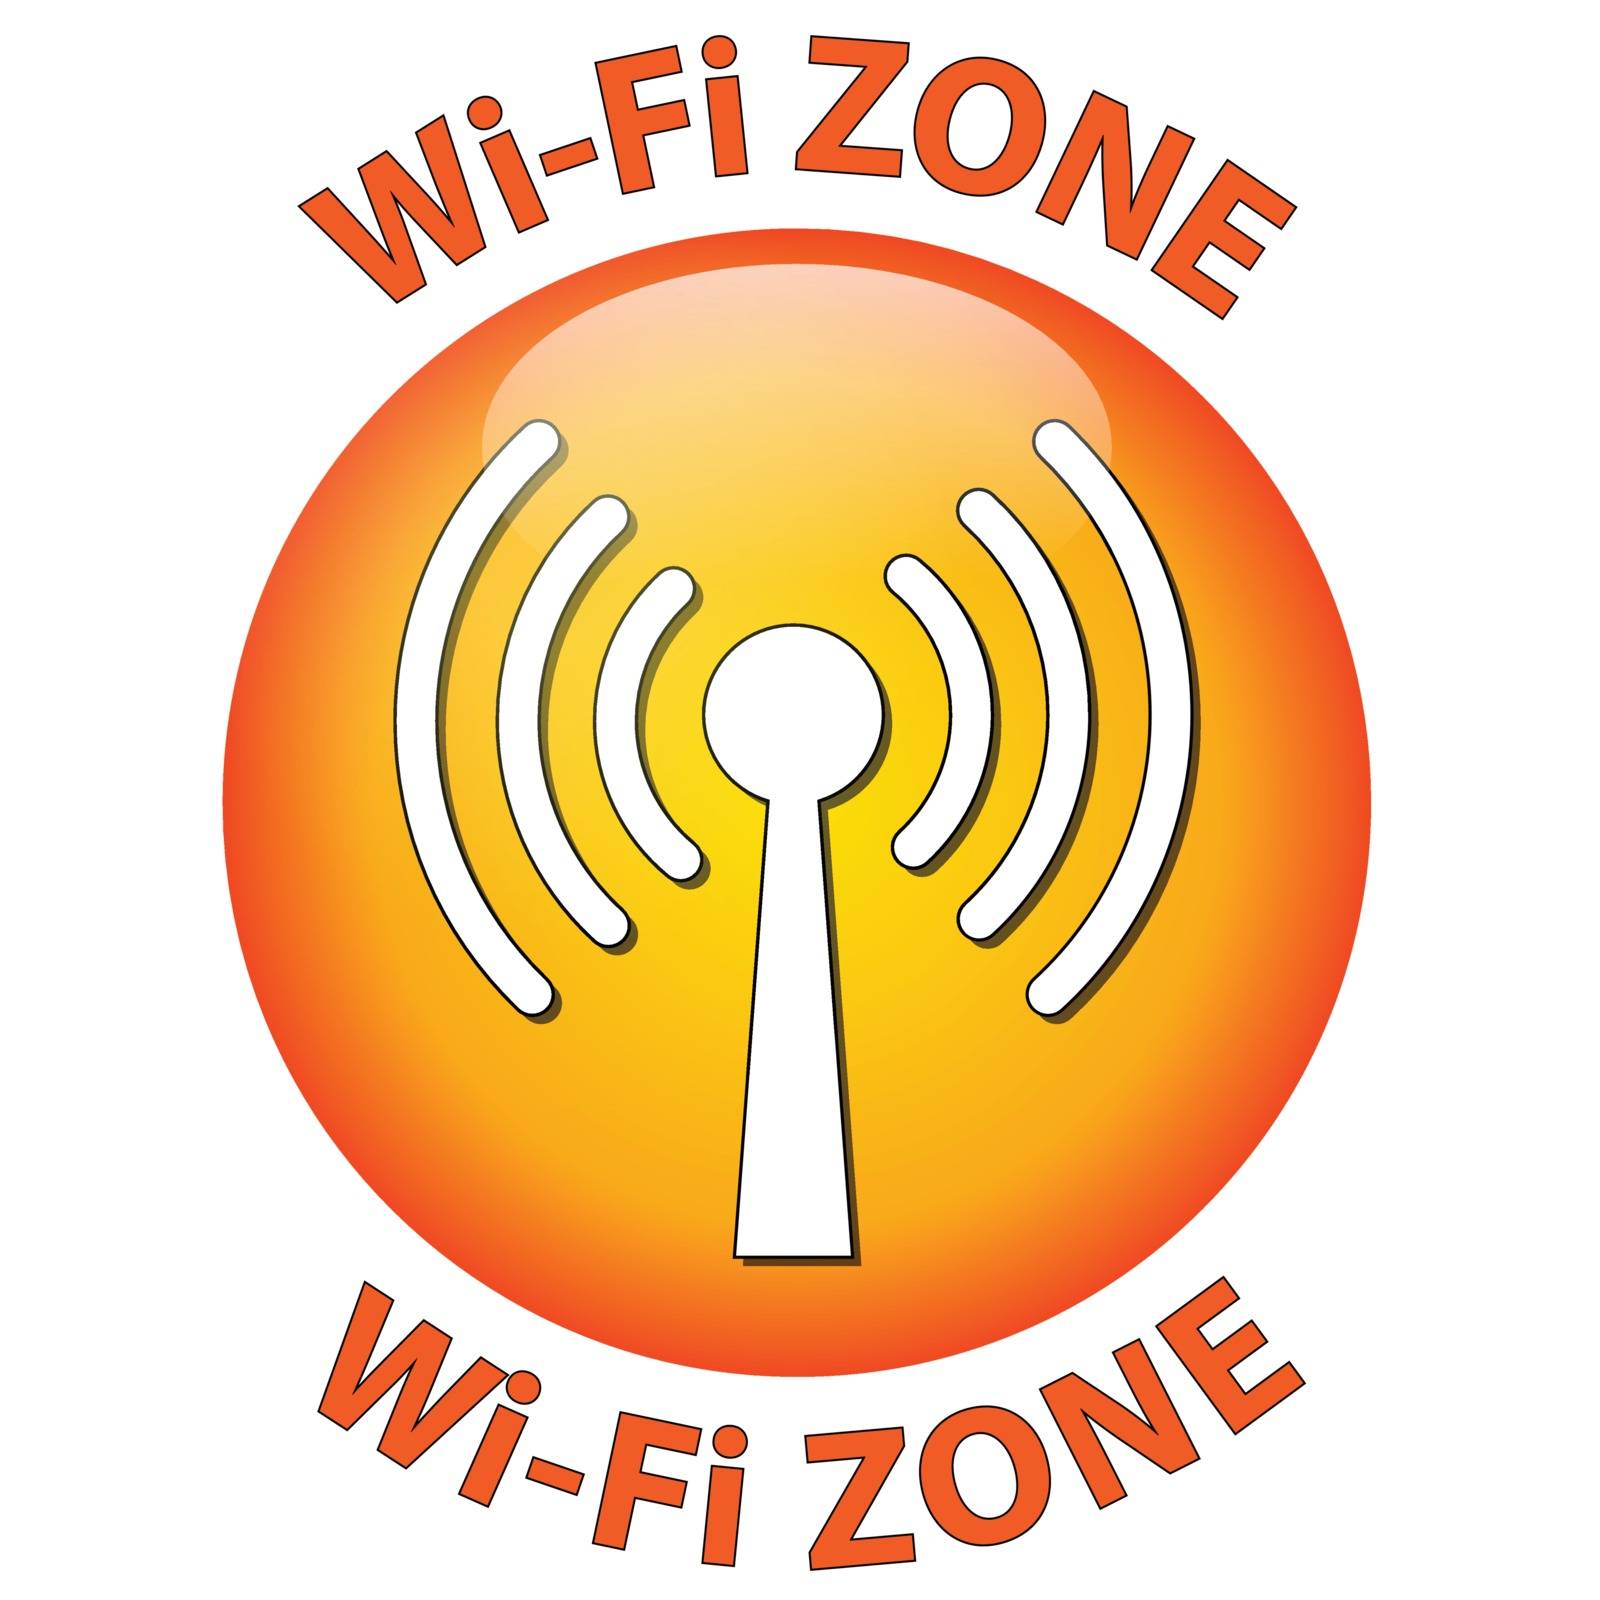 Wi-Fi zone by nickylarson974